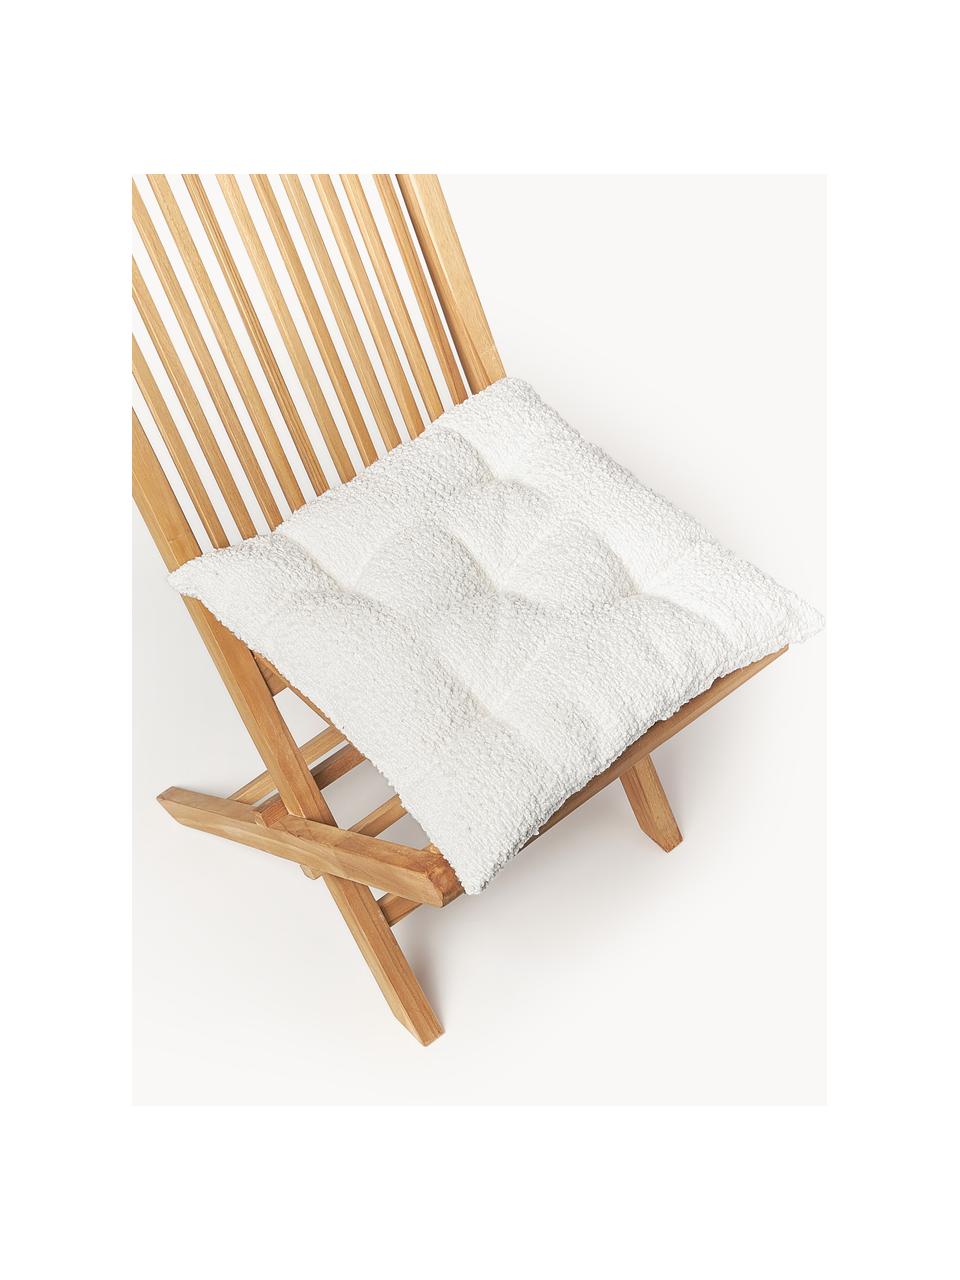 Coussins de chaise en tissu bouclé Bellamie, 2 pièces, Bouclé blanc, larg. 40 x long. 40 cm